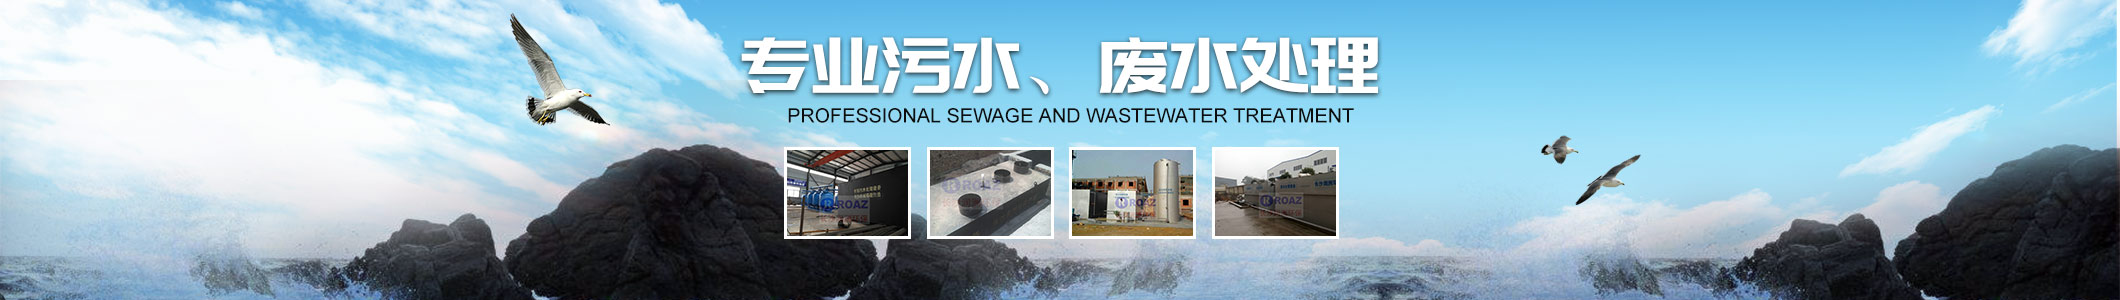 湖南一体化净水设备|湖南废水处理|湖南水处理设备|湖南一体化生活污水处理设备|长沙润洲环保设备有限公司